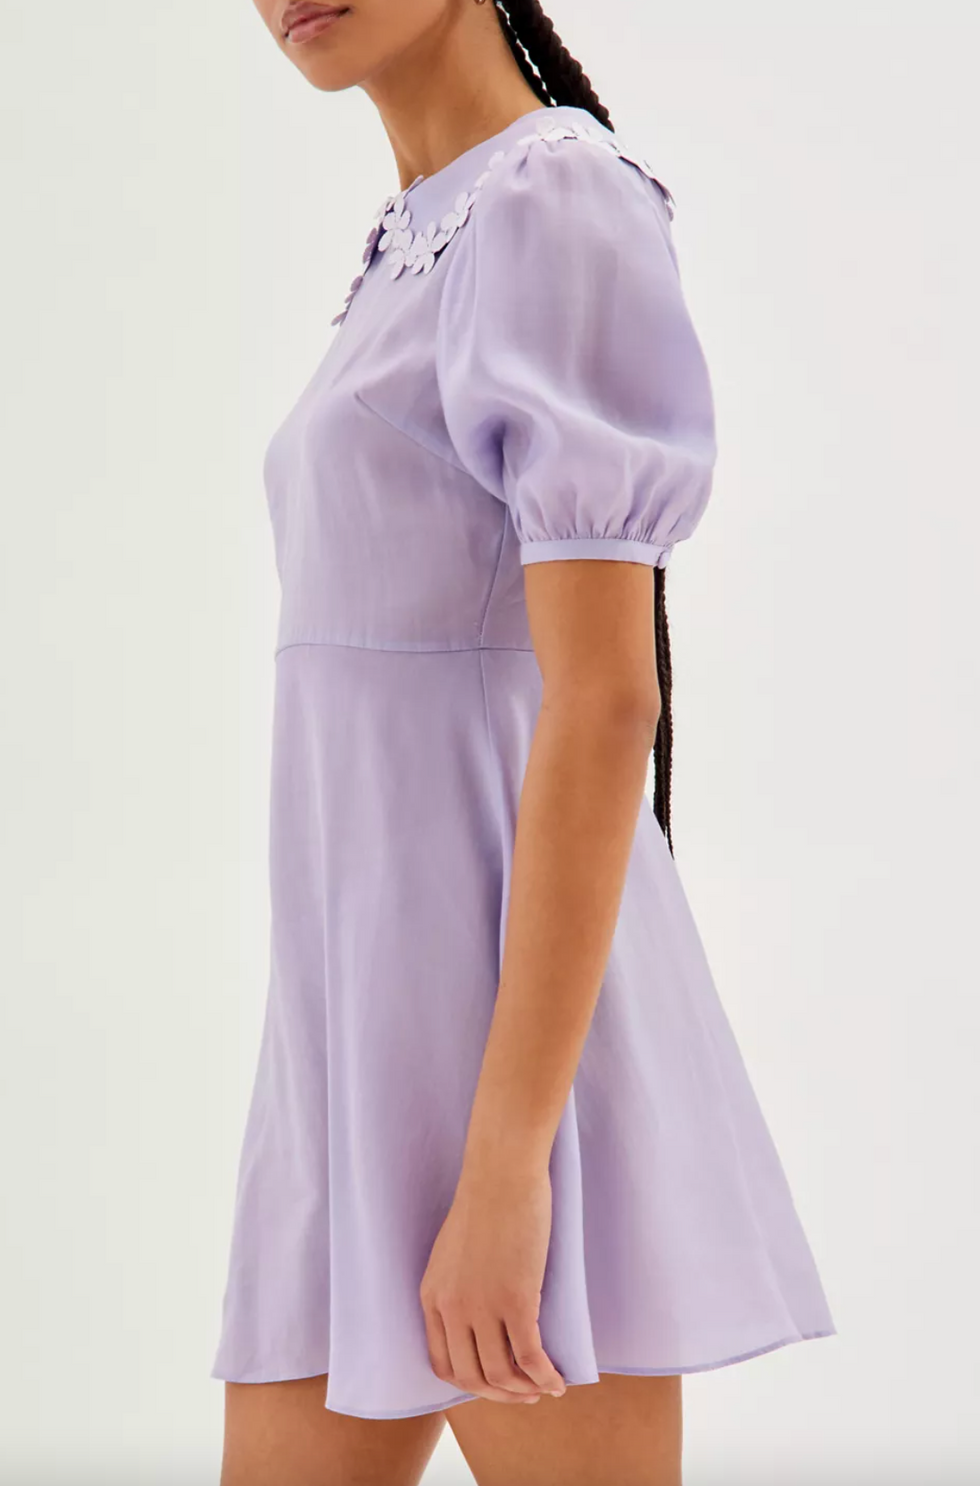 Glamorous Lilac Collared Mini Dress